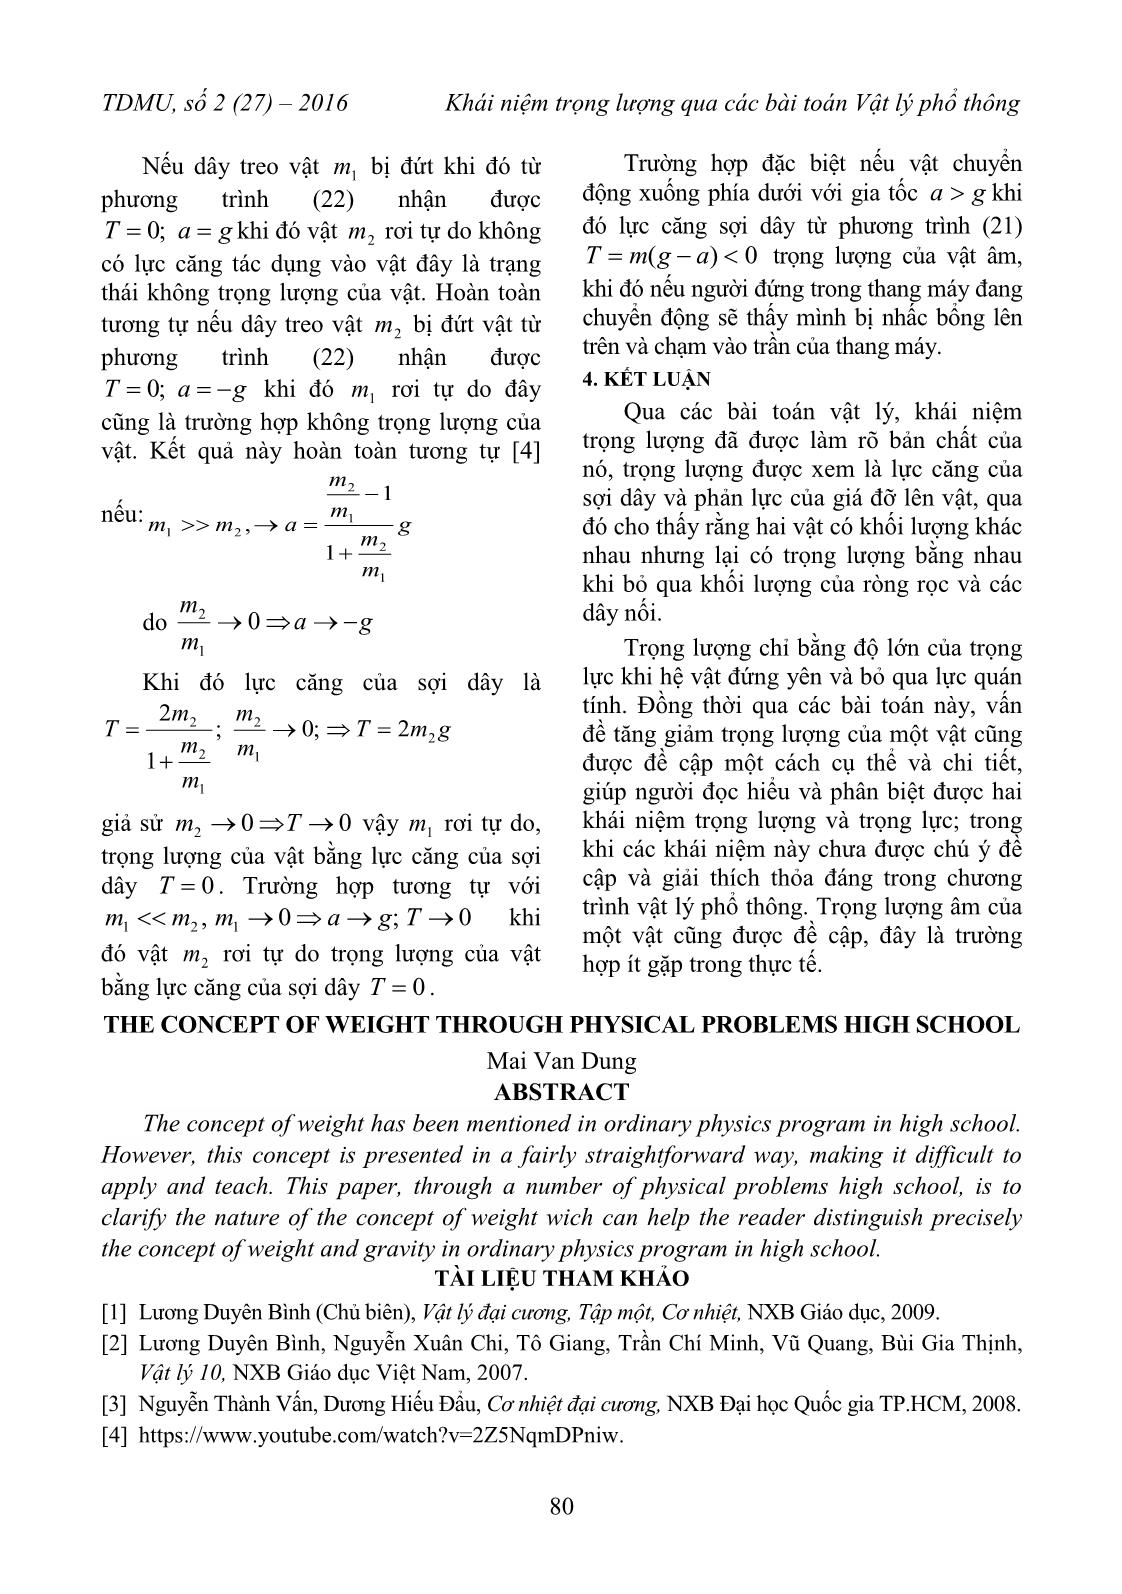 Khái niệm trọng lượng qua các bài toán vật lý Phổ thông trang 5